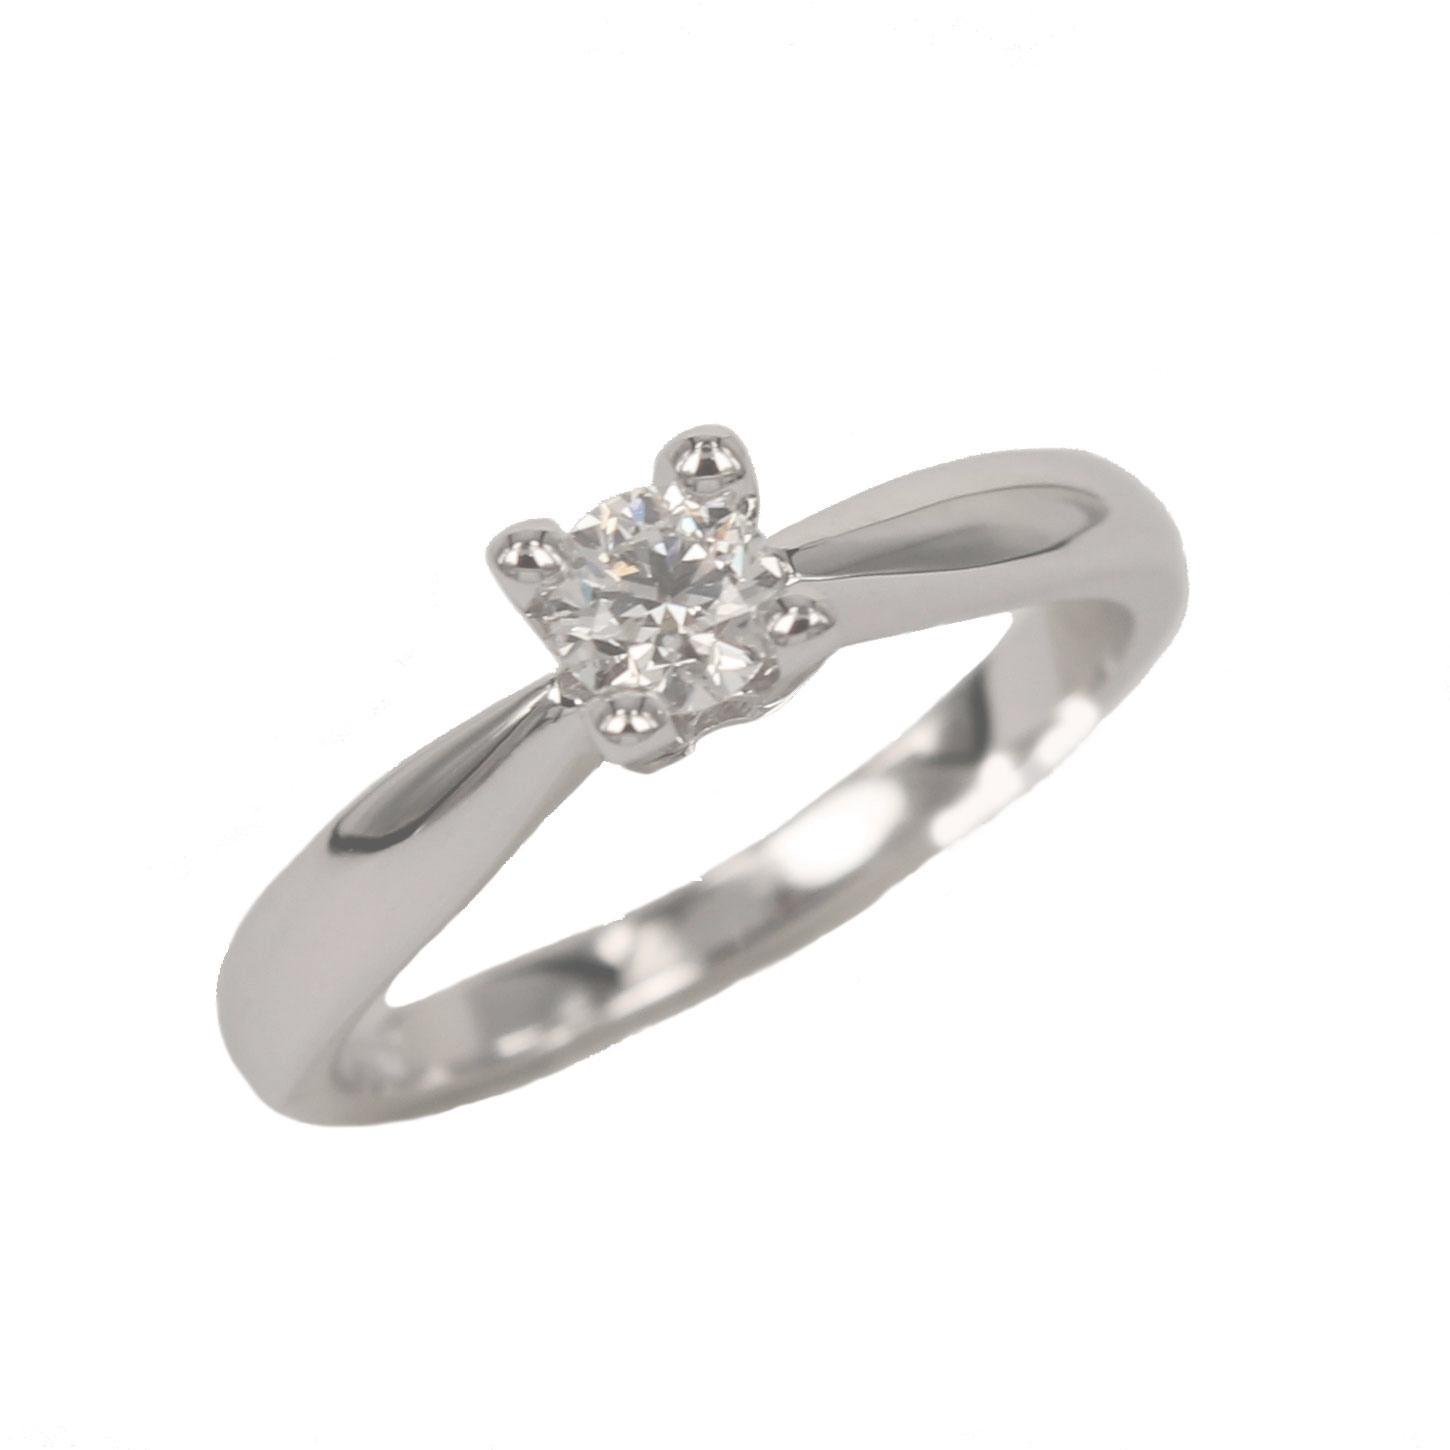 Fabio Ferro White Gold Engagement Ring with Brilliant Cut Diamond 0.30 Carat